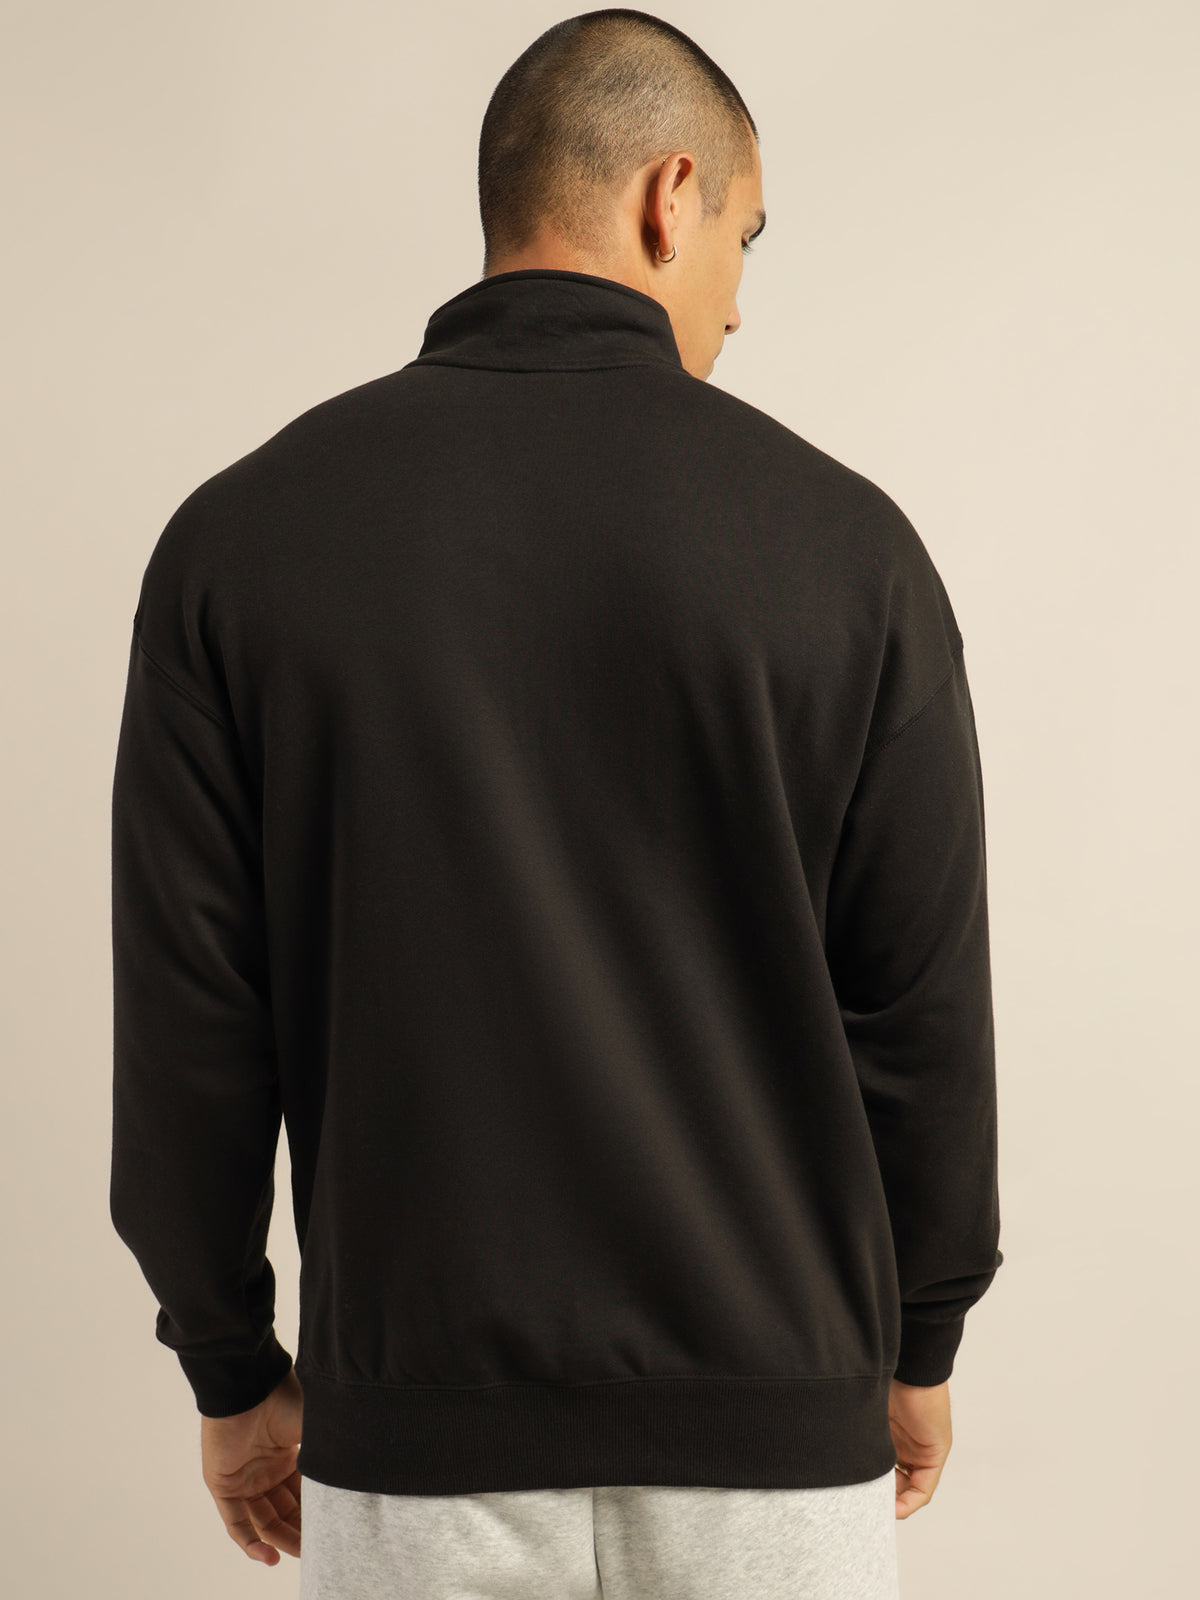 Classic Half Zip Sweatshirt in Black